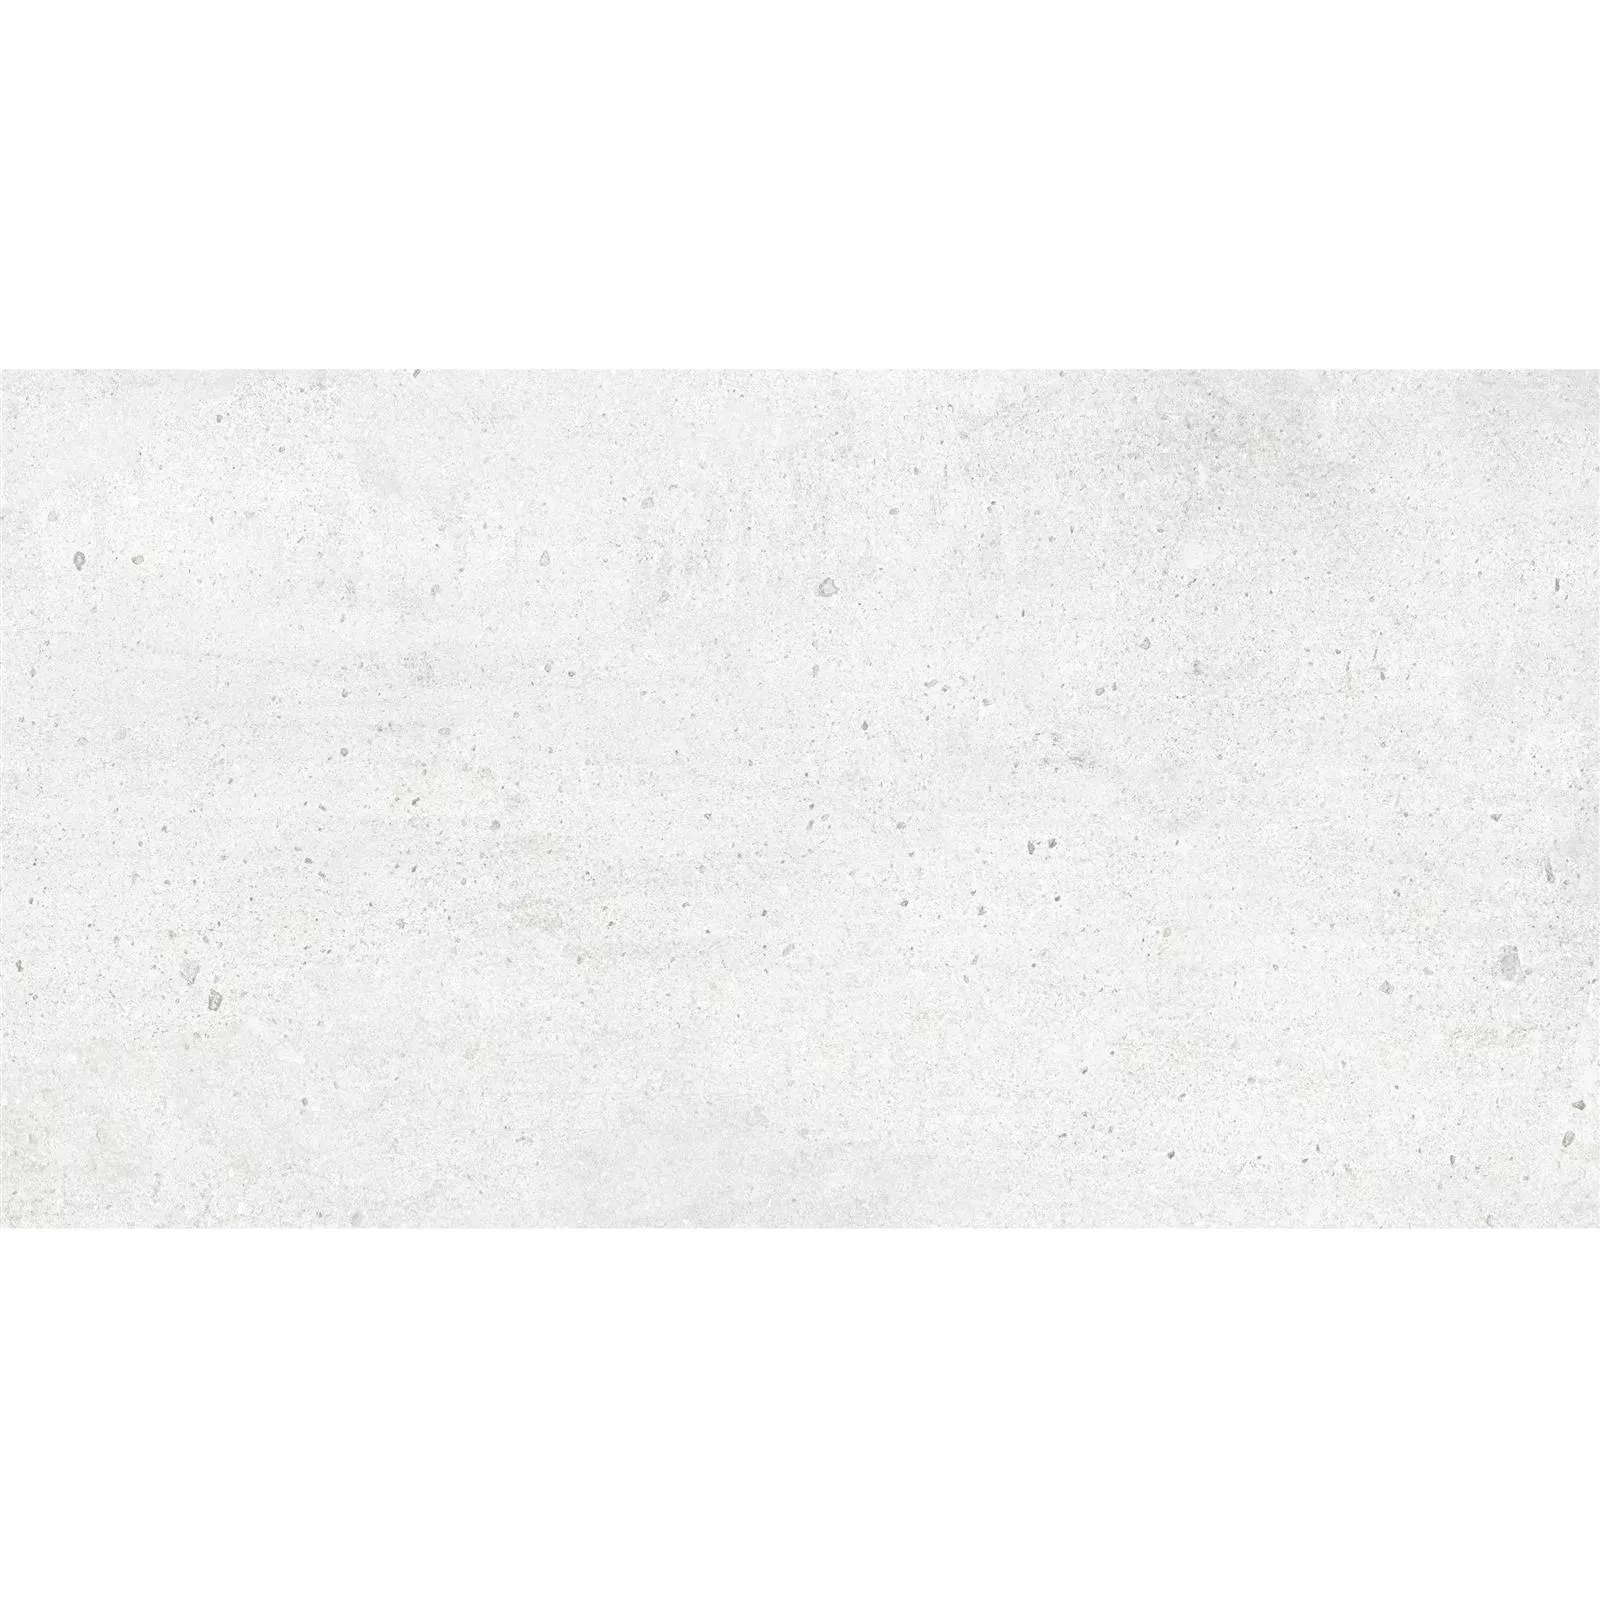 Πρότυπο Πλακάκια Δαπέδου Freeland Πέτρινη Όψη R10/B Ασπρο 30x60cm